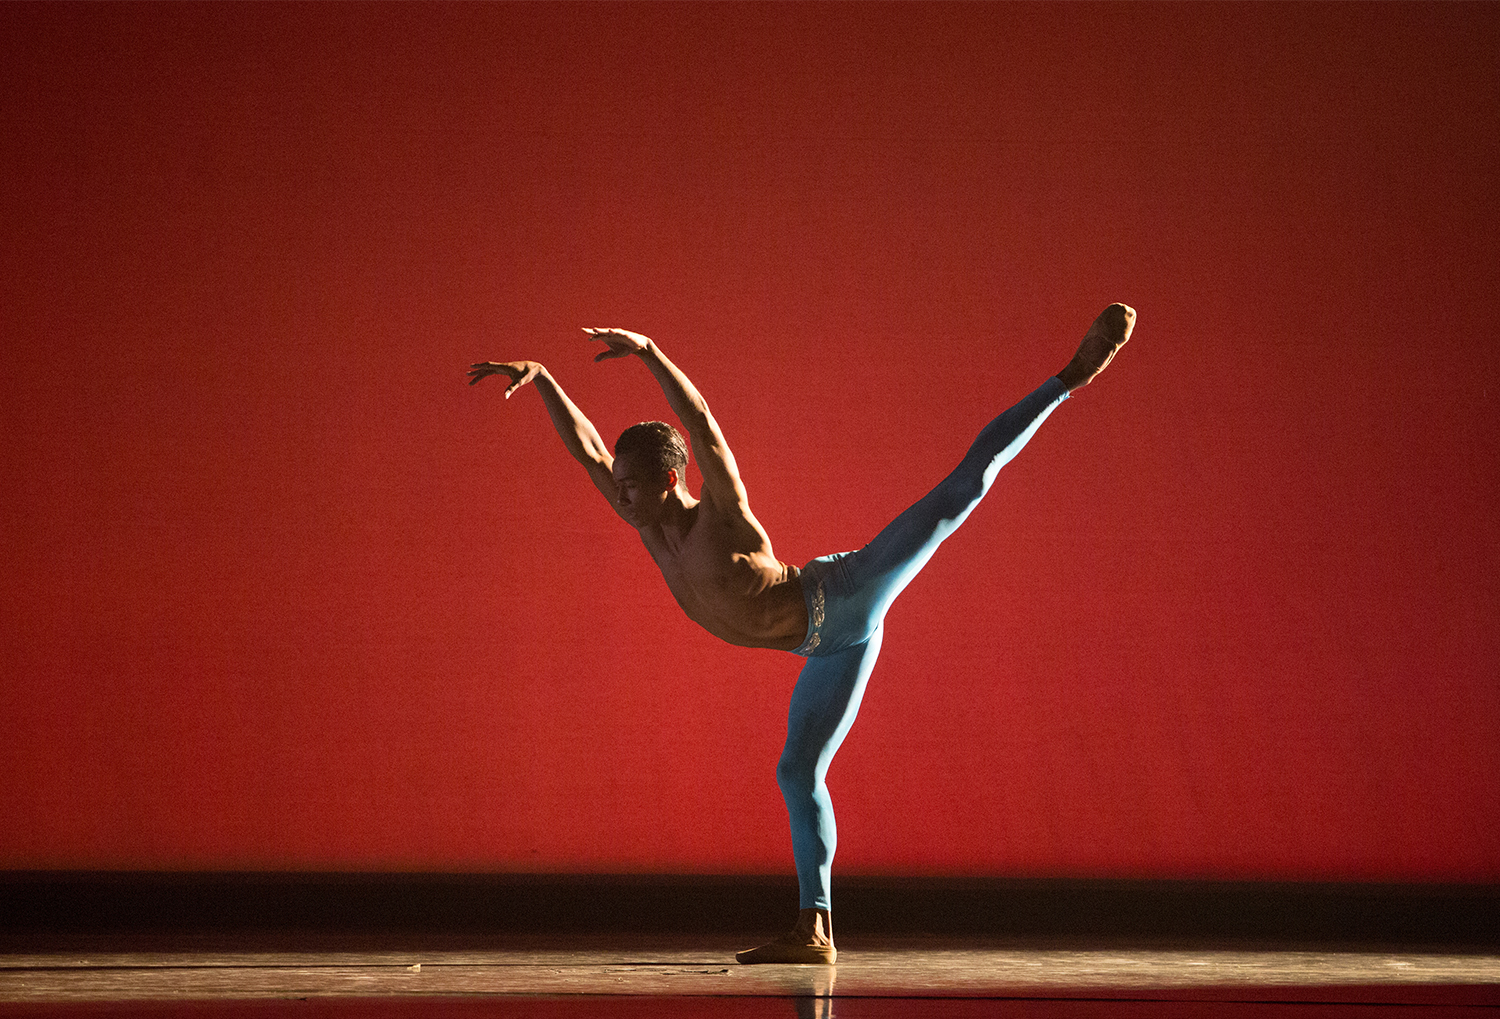 Ricardo Santos in "Rio." Choreography by Ib Andersen. Photo by Alexander Iziliaev.